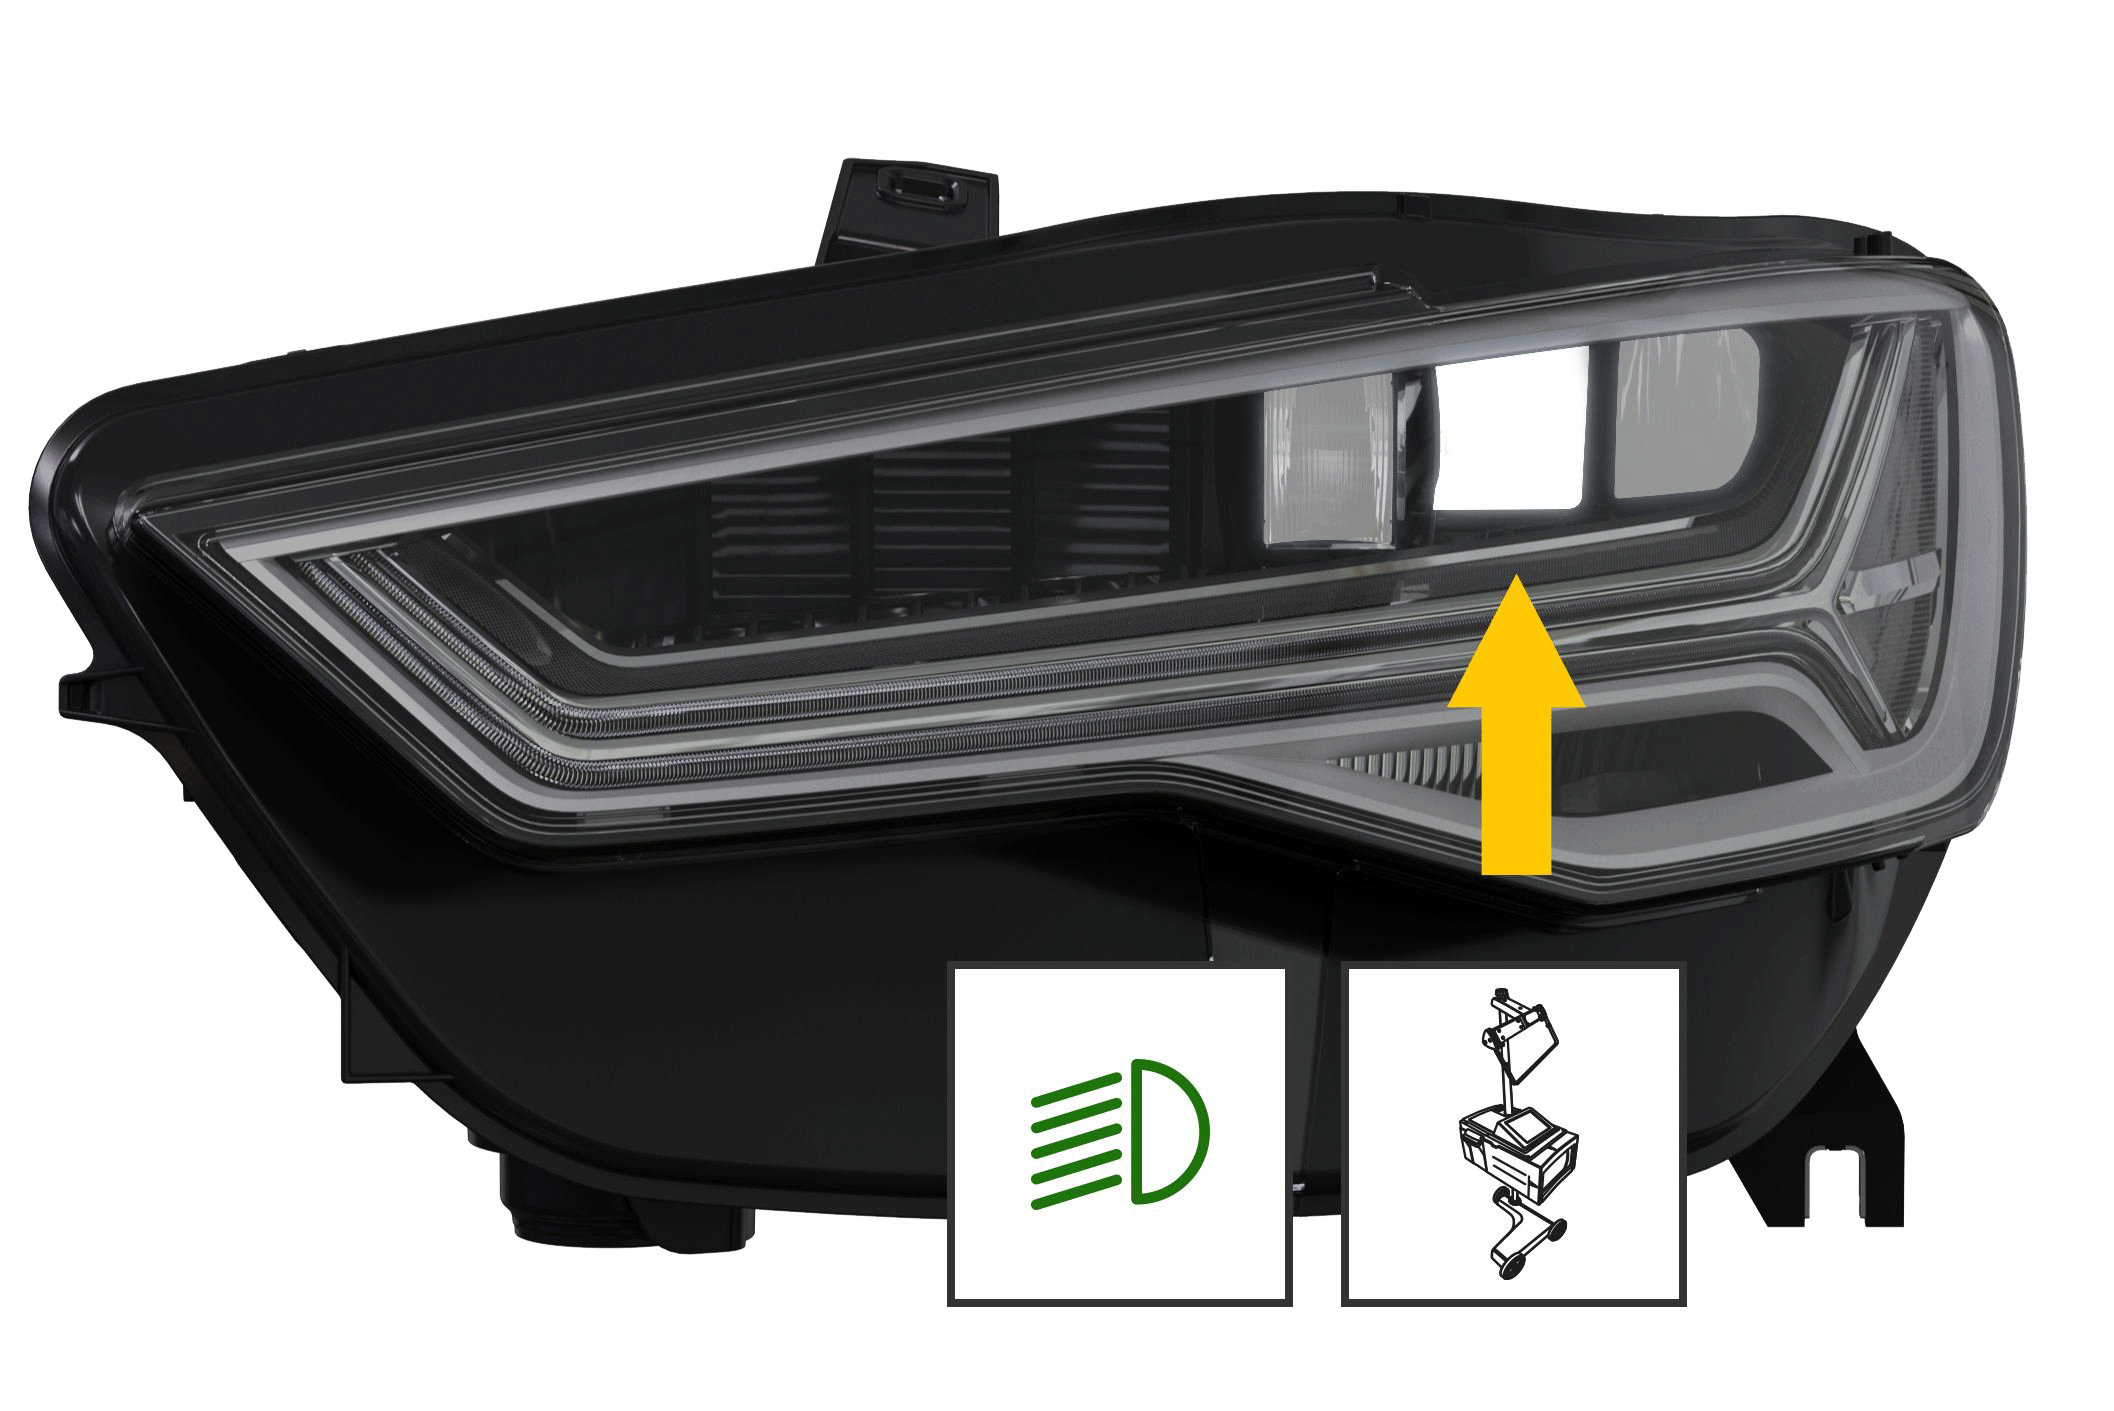 Audi A6 Matrix LED Scheinwerfer